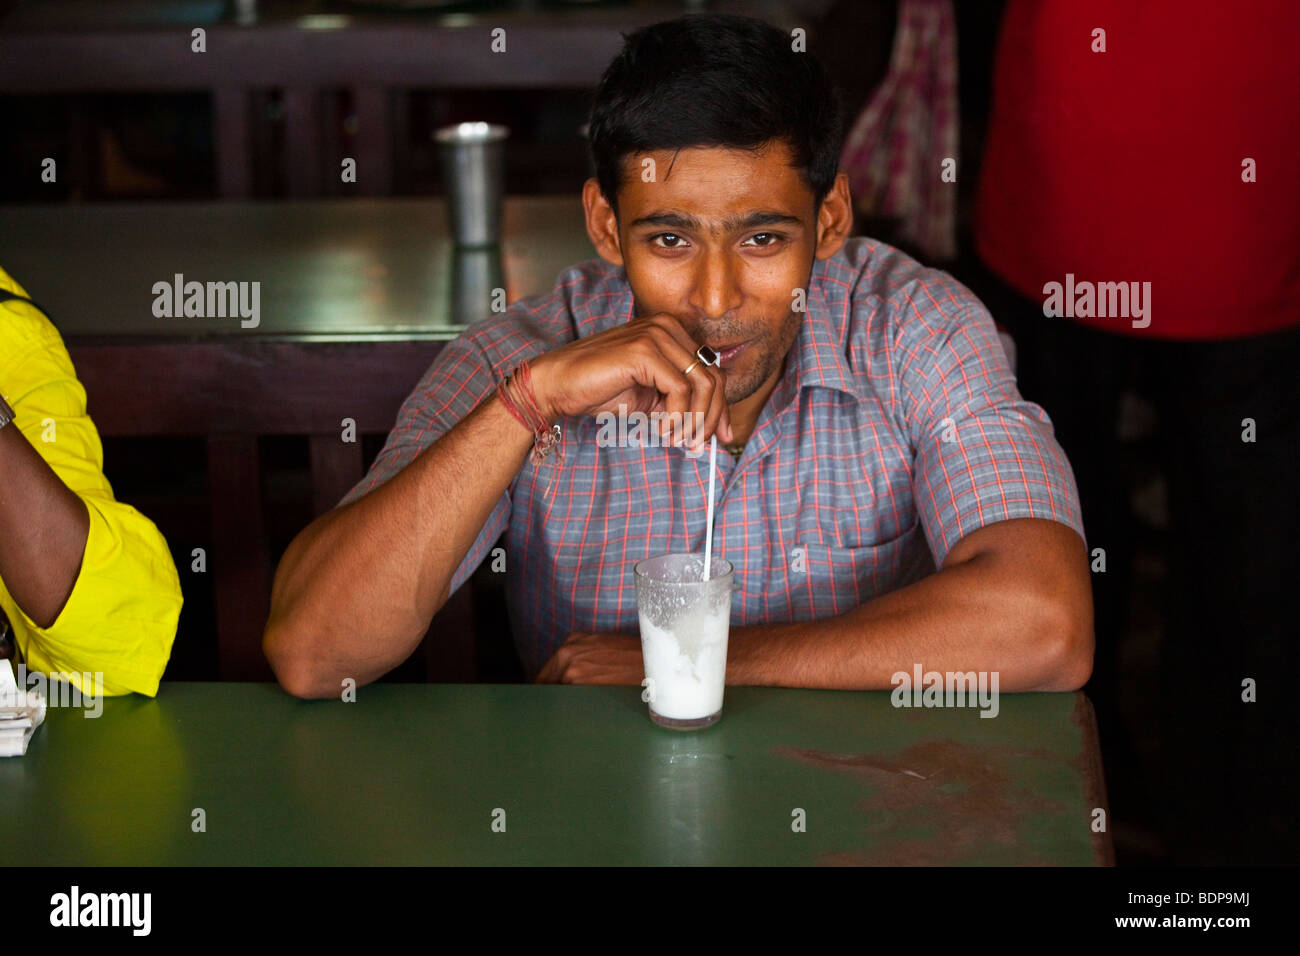 Jeune homme dans une confiserie de Calcutta, Inde Banque D'Images